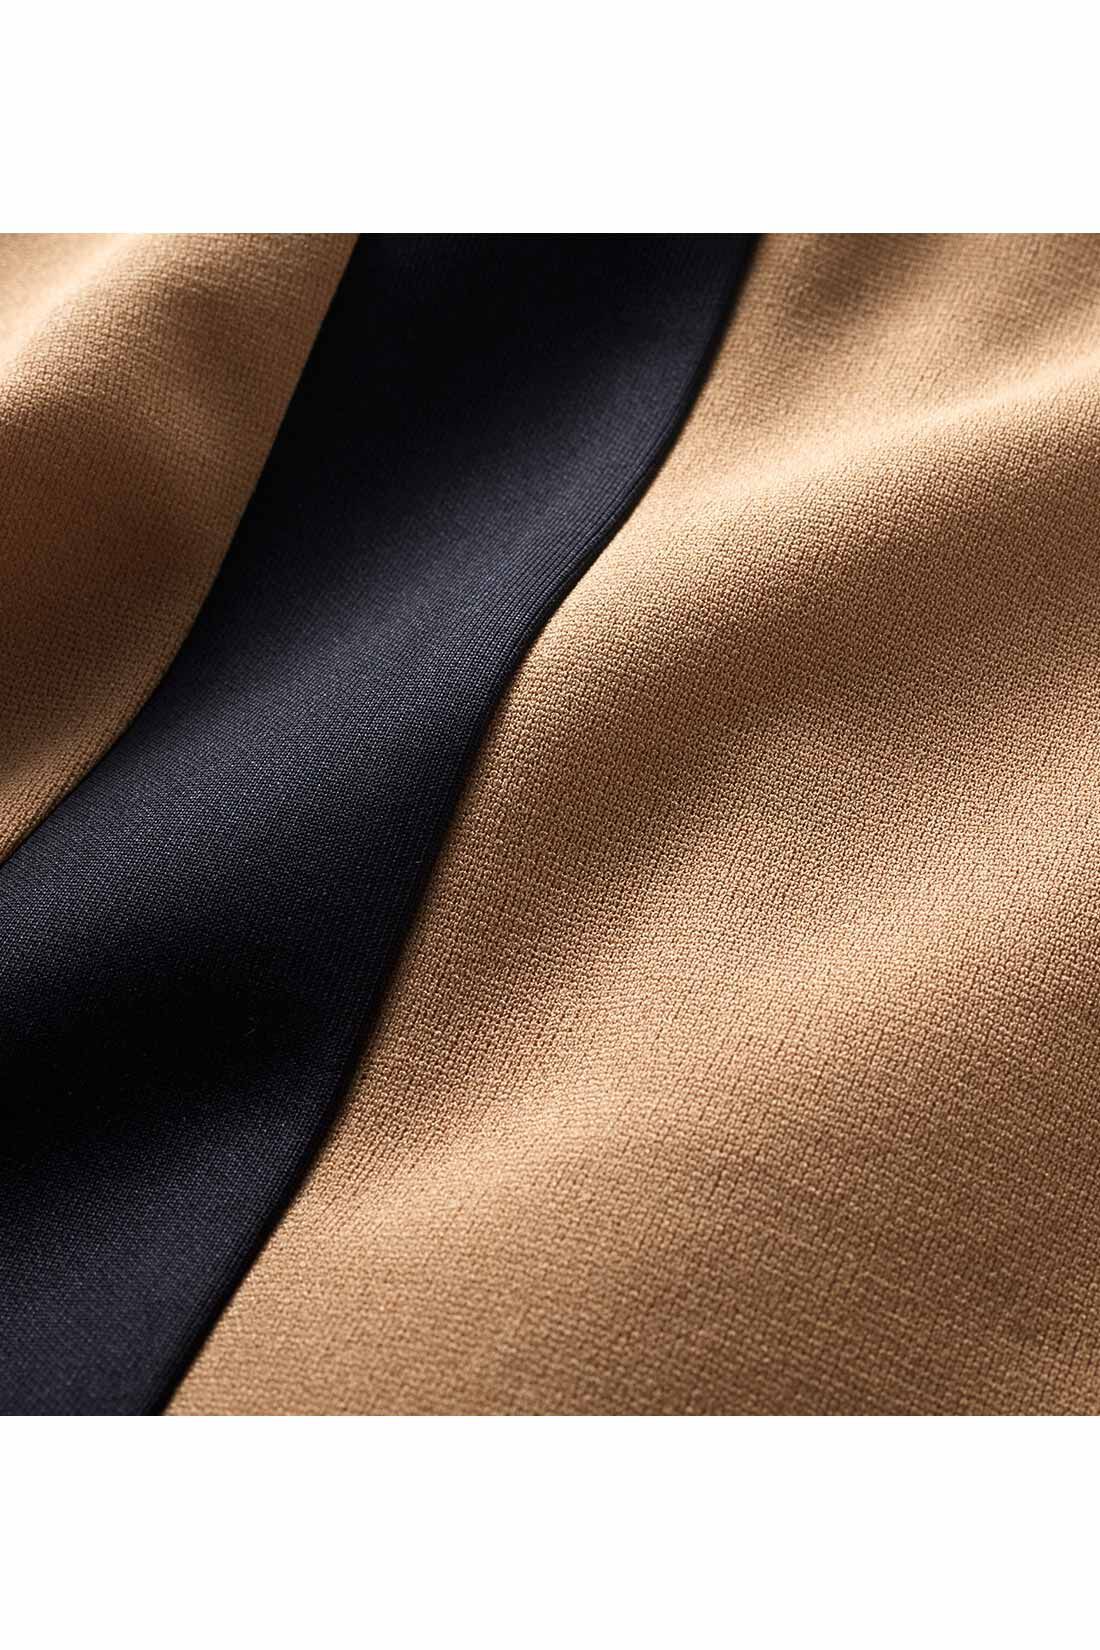 IEDIT|IEDIT[イディット]　布はく見えカットソー素材のサイドライン入りテーパードパンツ|きれいに見えてらくちん、軽く伸びやかなカットソージョーゼット素材。